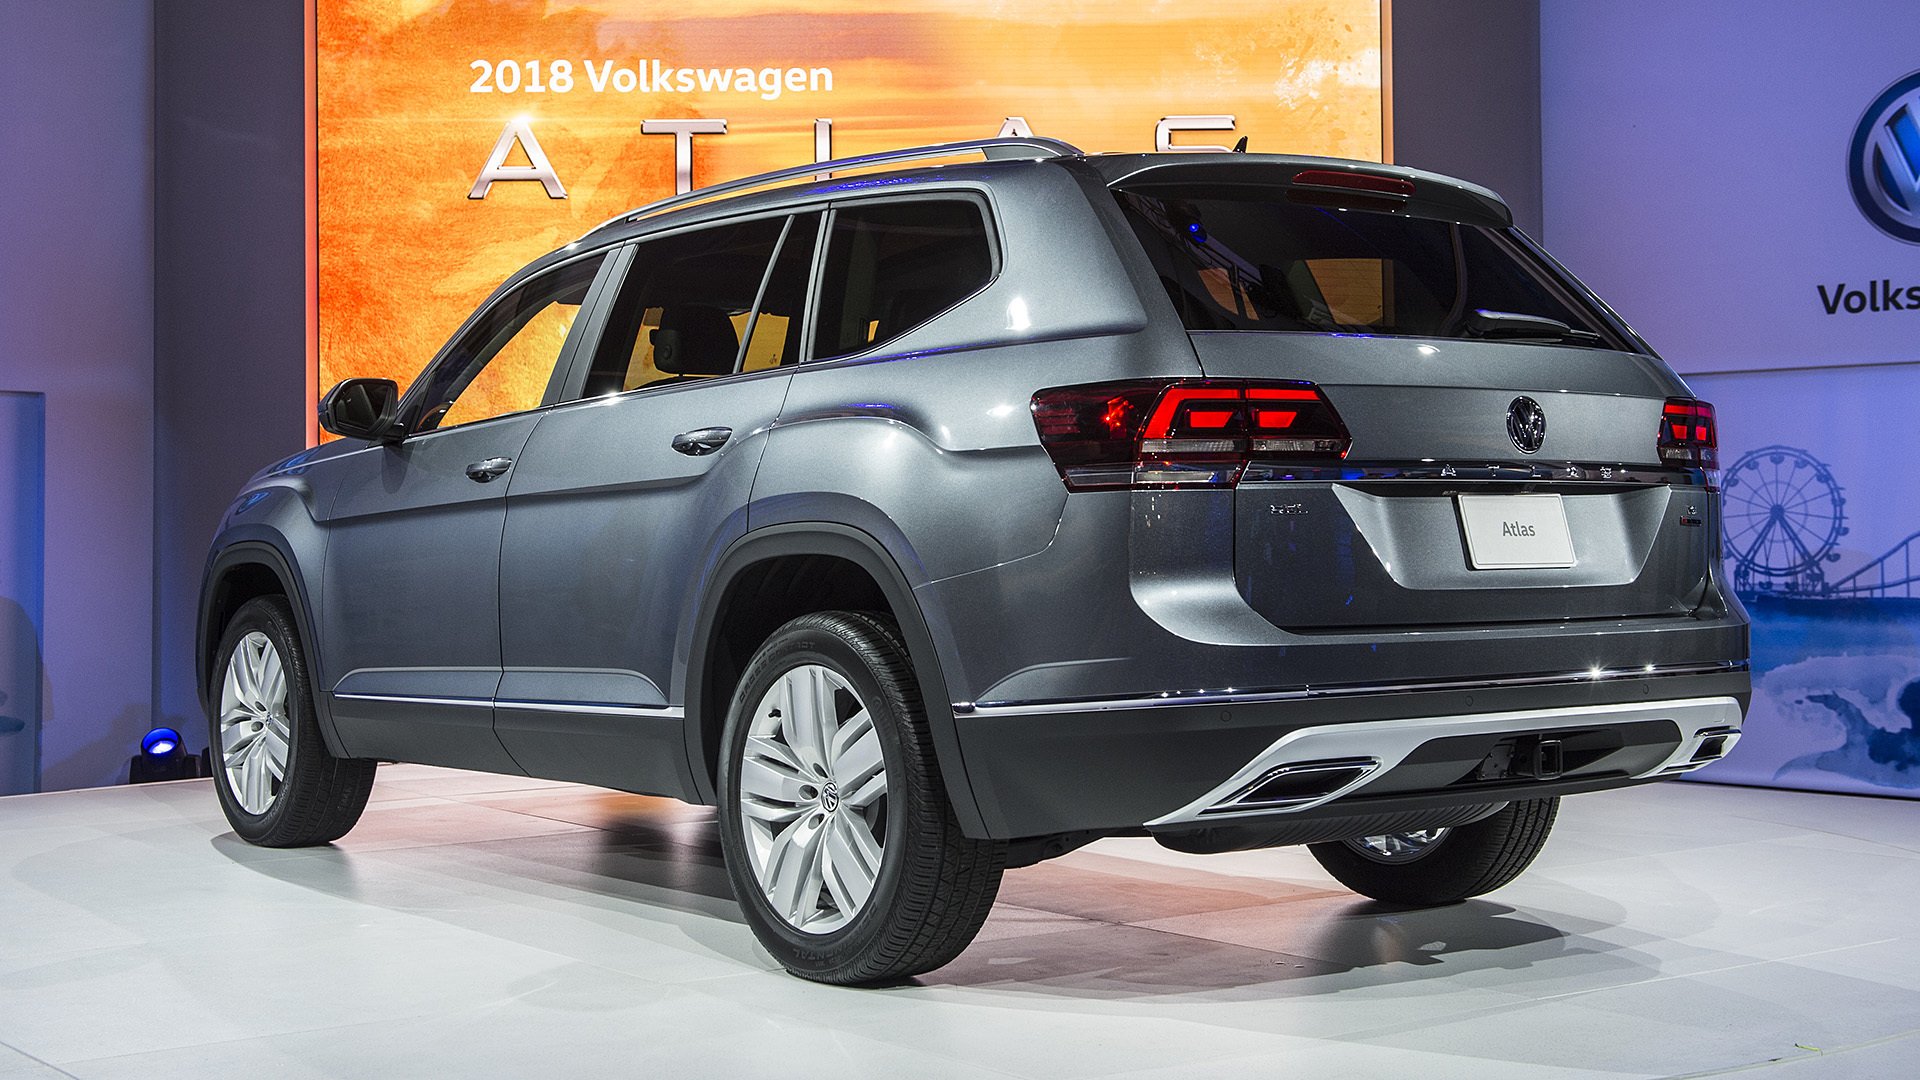 2017, Atlas, Cars, Suv, Volkswagen Wallpaper